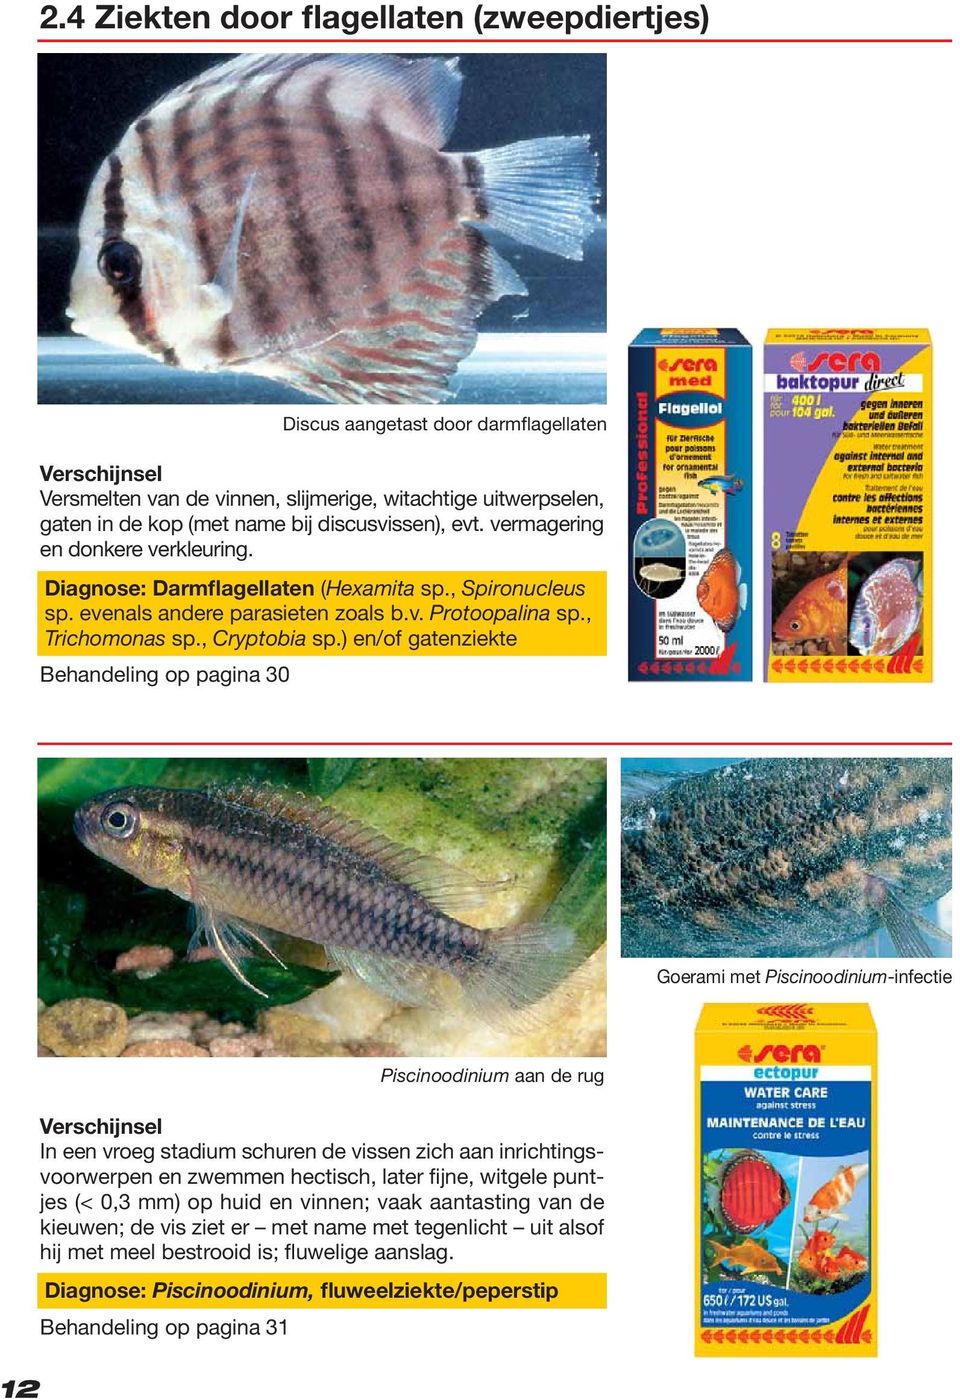 ) en/of gatenziekte Behandeling op pagina 30 Goerami met Piscinoodinium-infectie 12 In een vroeg stadium schuren de vissen zich aan inrichtingsvoorwerpen en zwemmen hectisch, later fijne, witgele